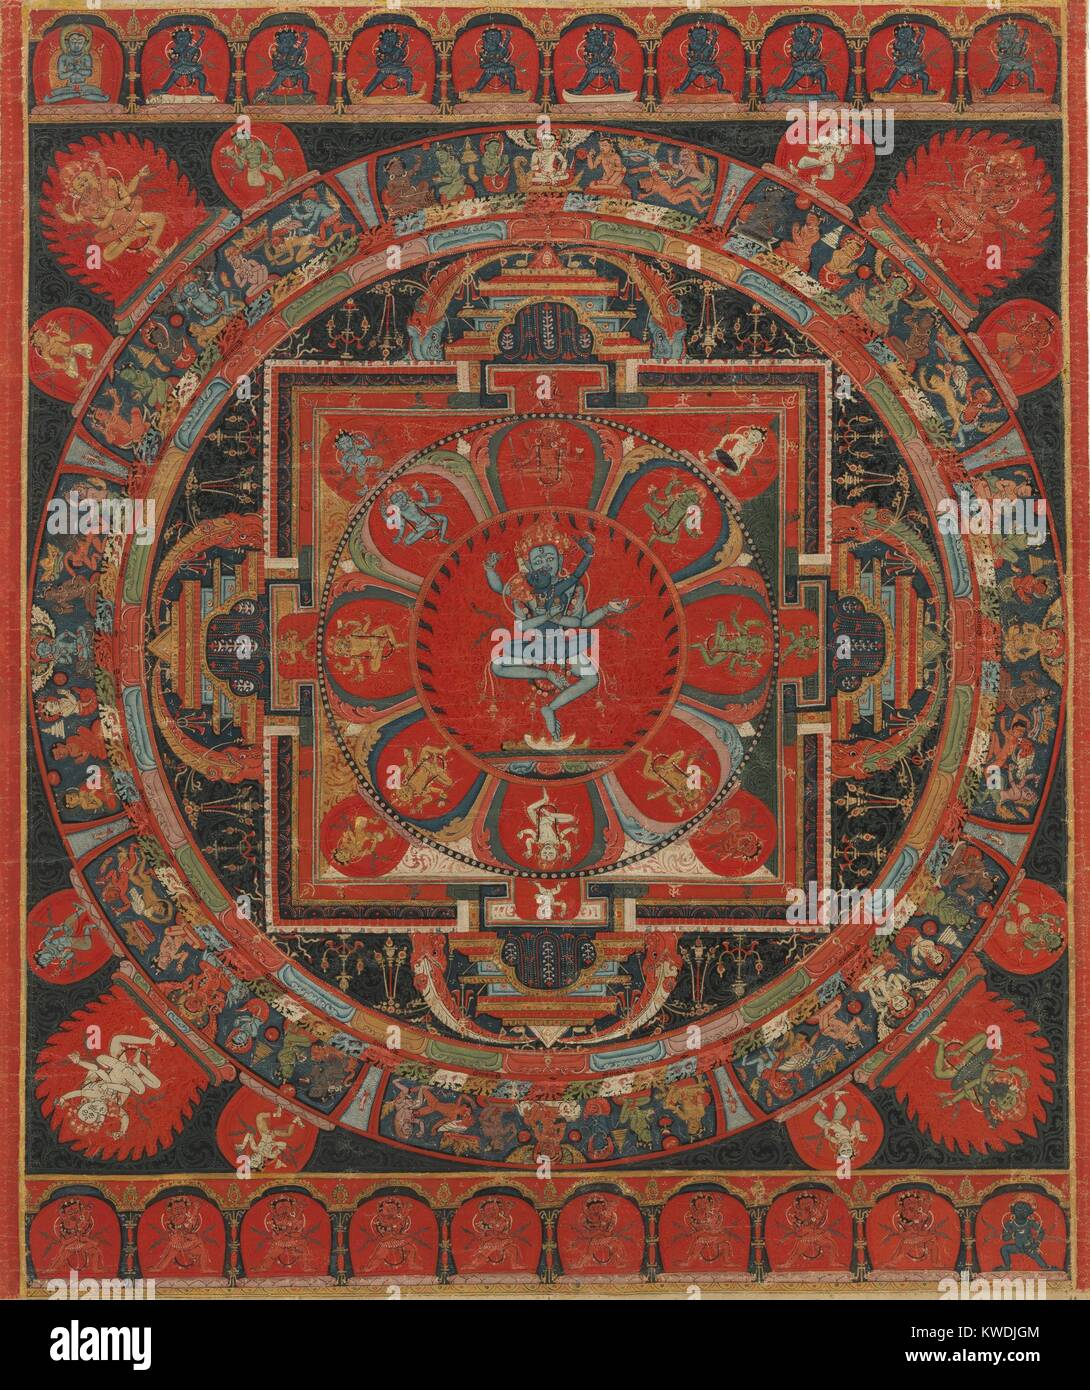 HEVAJRA MANDELA, tibetanischen, buddhistischen, 15 C., Malerei, Staupe auf Tuch. Hevajra ist einer der wichtigsten Yidams (erleuchtete Wesen) in Tantrischen oder Vajrayana Buddhismus. Hevajra und seine Gefährtin, Nairatmya, Tanz an der Kreuzung von vier Vajra gateways, zeigt ihre Position in der Mitte des Kosmos (BSLOC 2017 16 16) Stockfoto